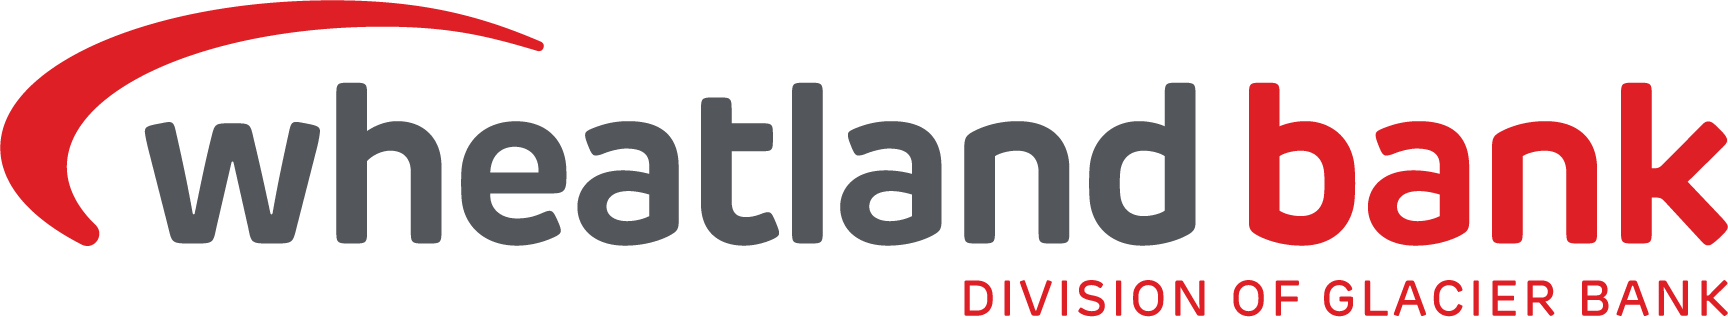 wheatland bank logo